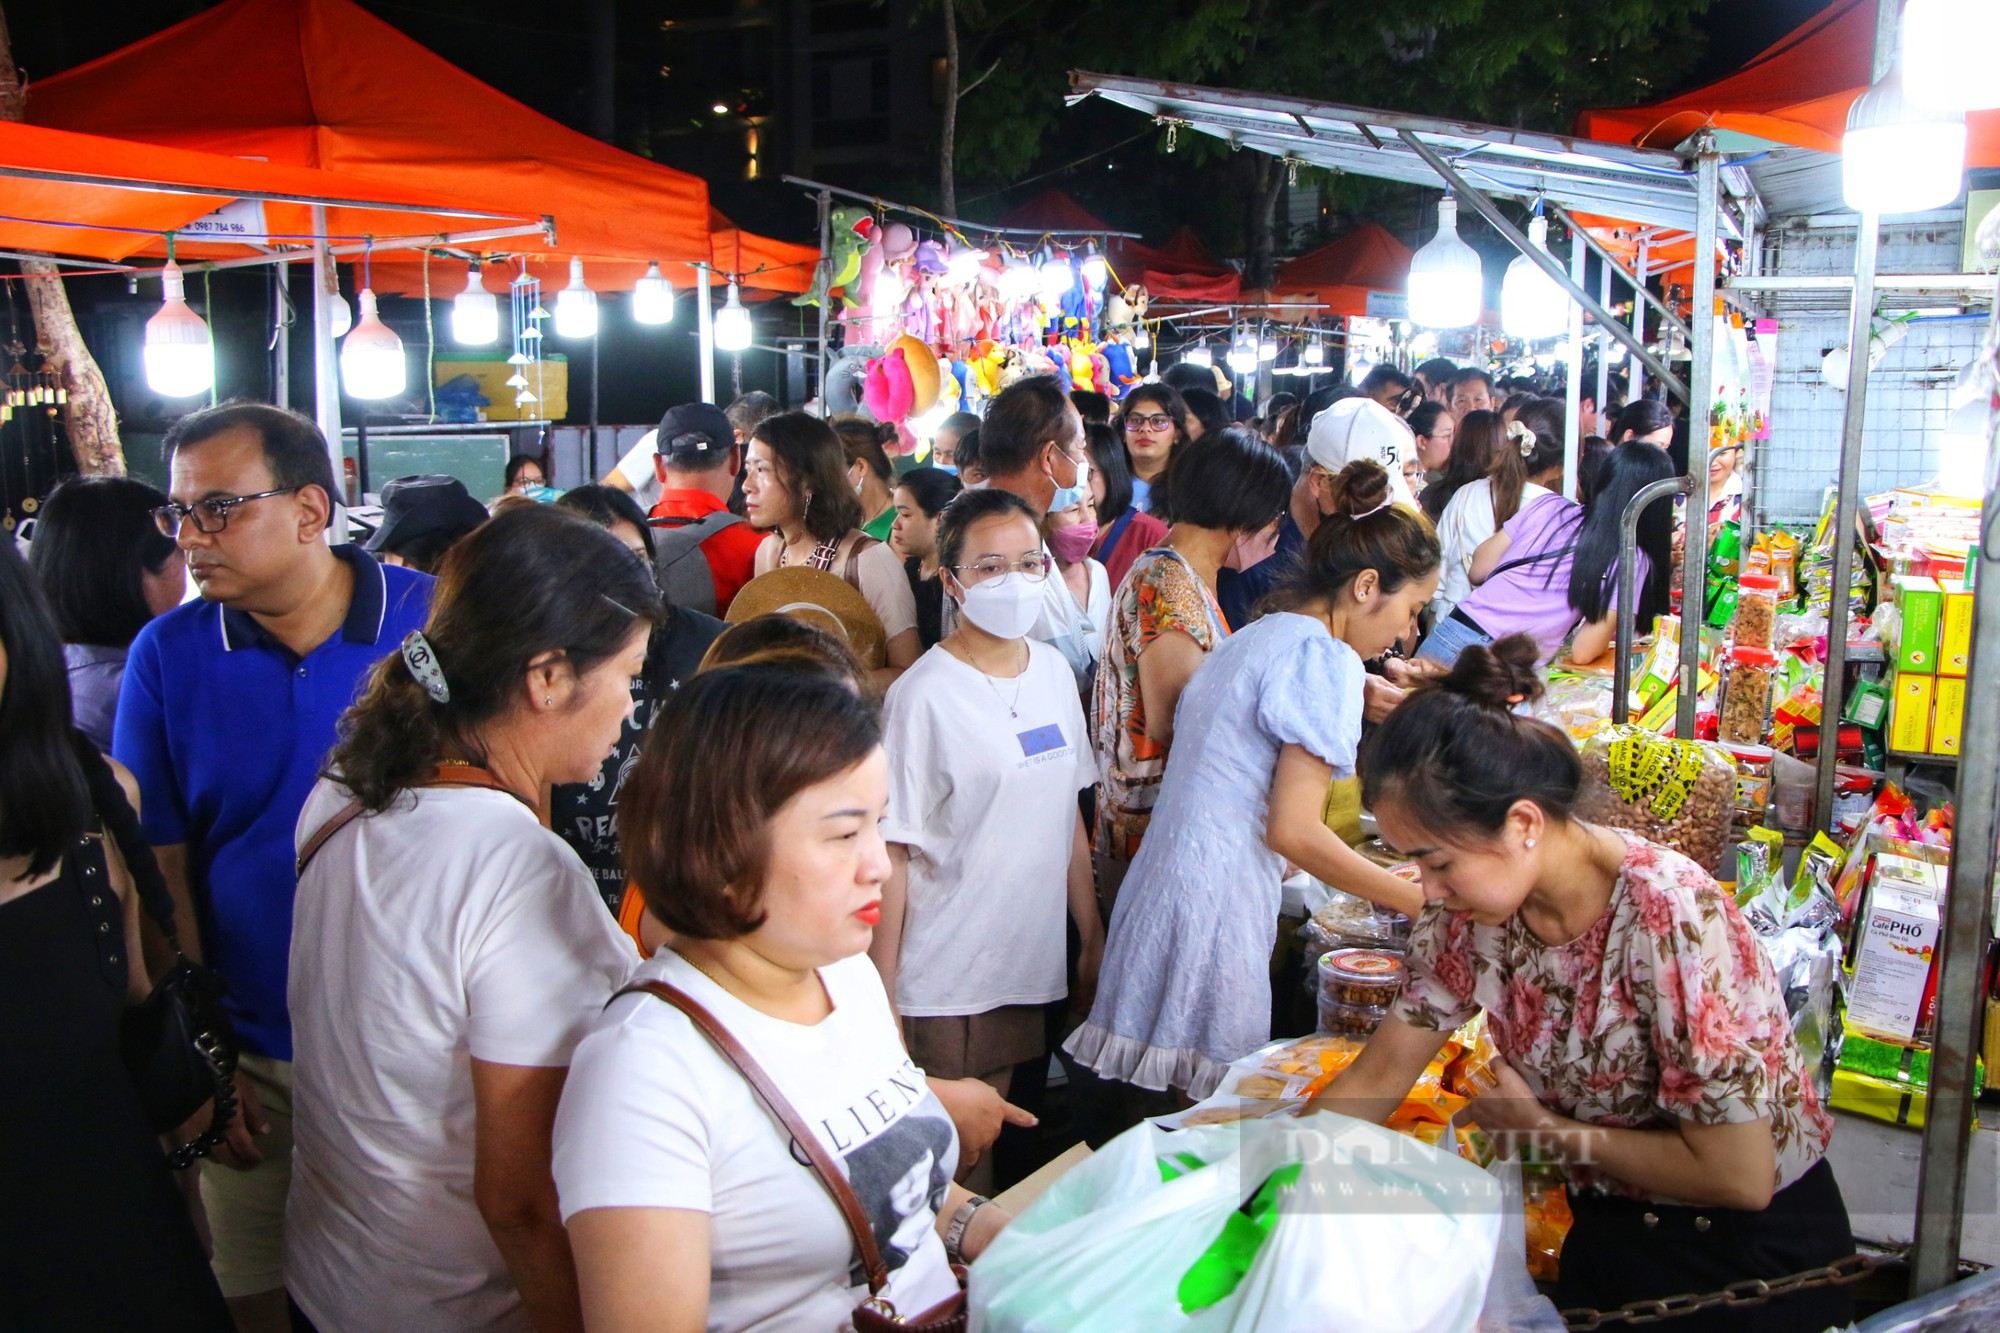 Chợ đêm lớn nhất Đà Nẵng chật kín lối ra vào dịp lễ 30/4 - 1/5 - Ảnh 4.